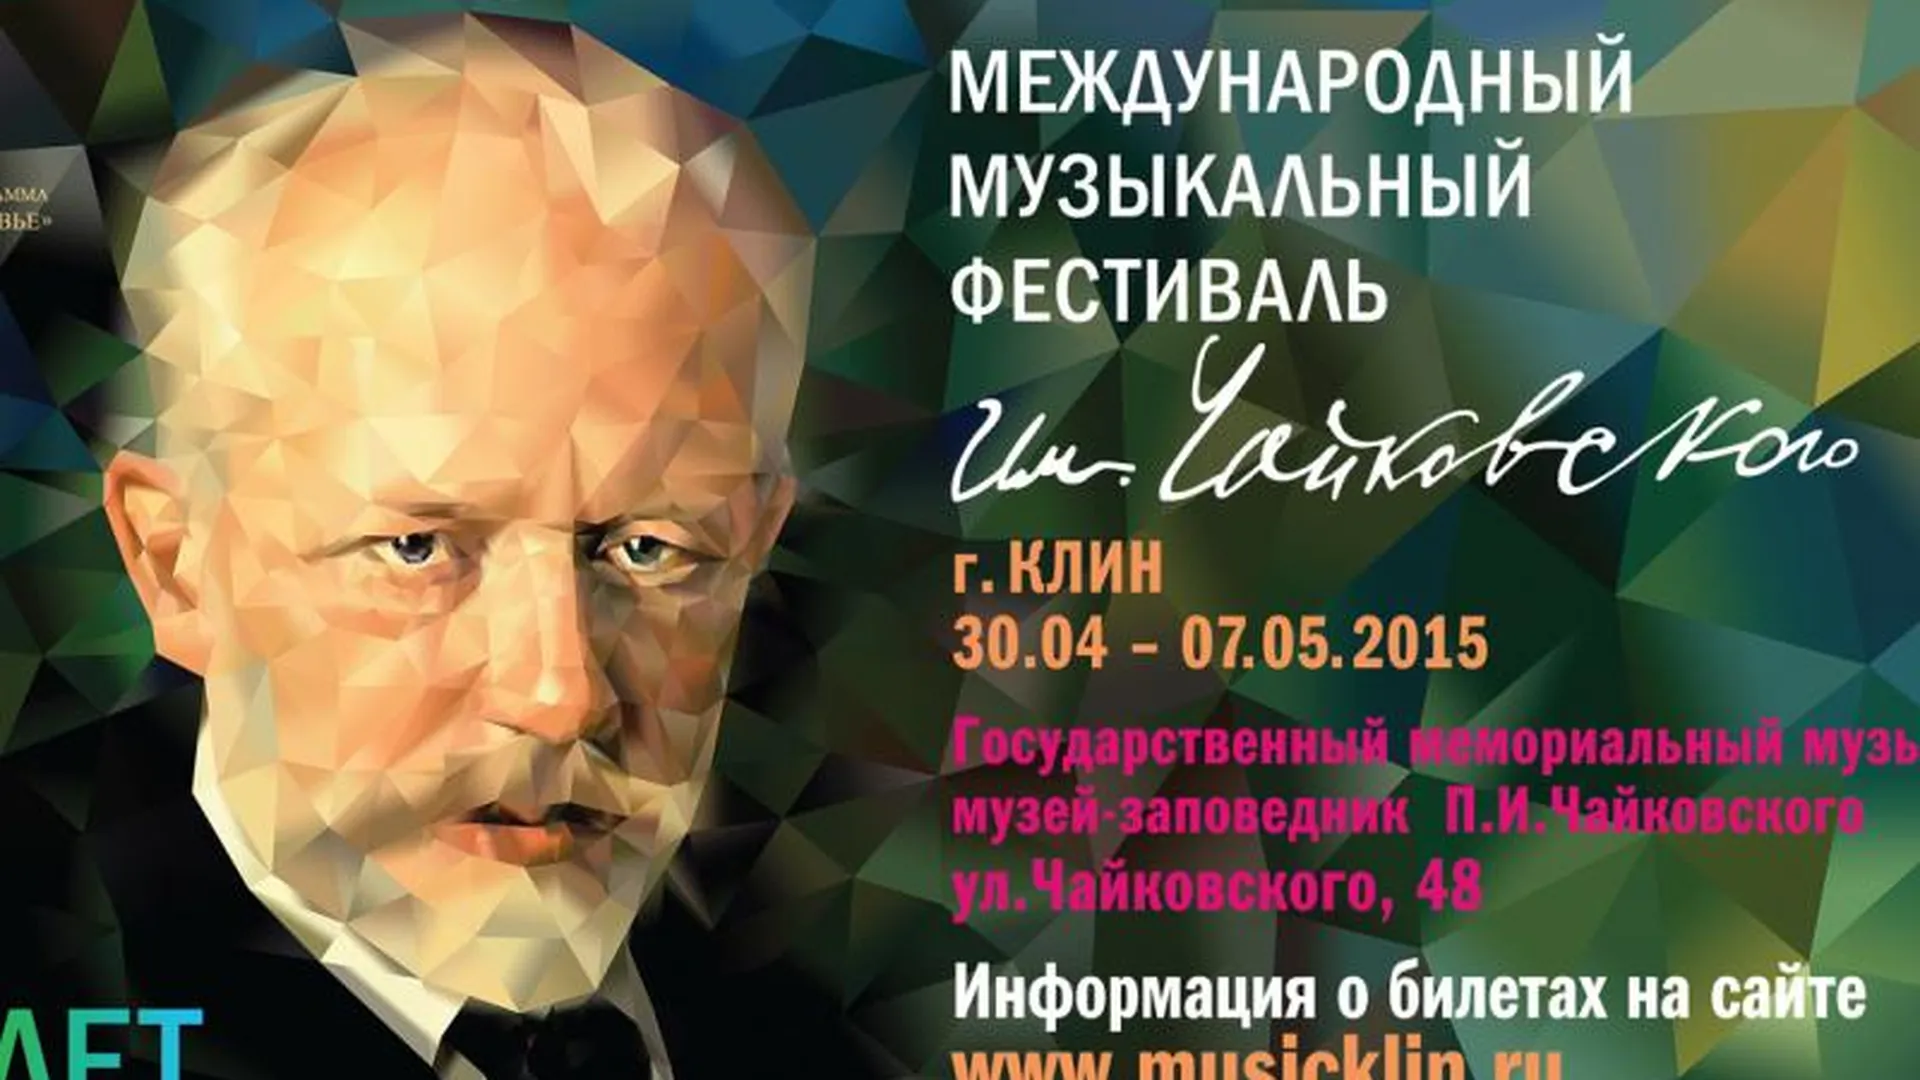 20 часов музыки подарят слушателям фестиваля Чайковского в Клину